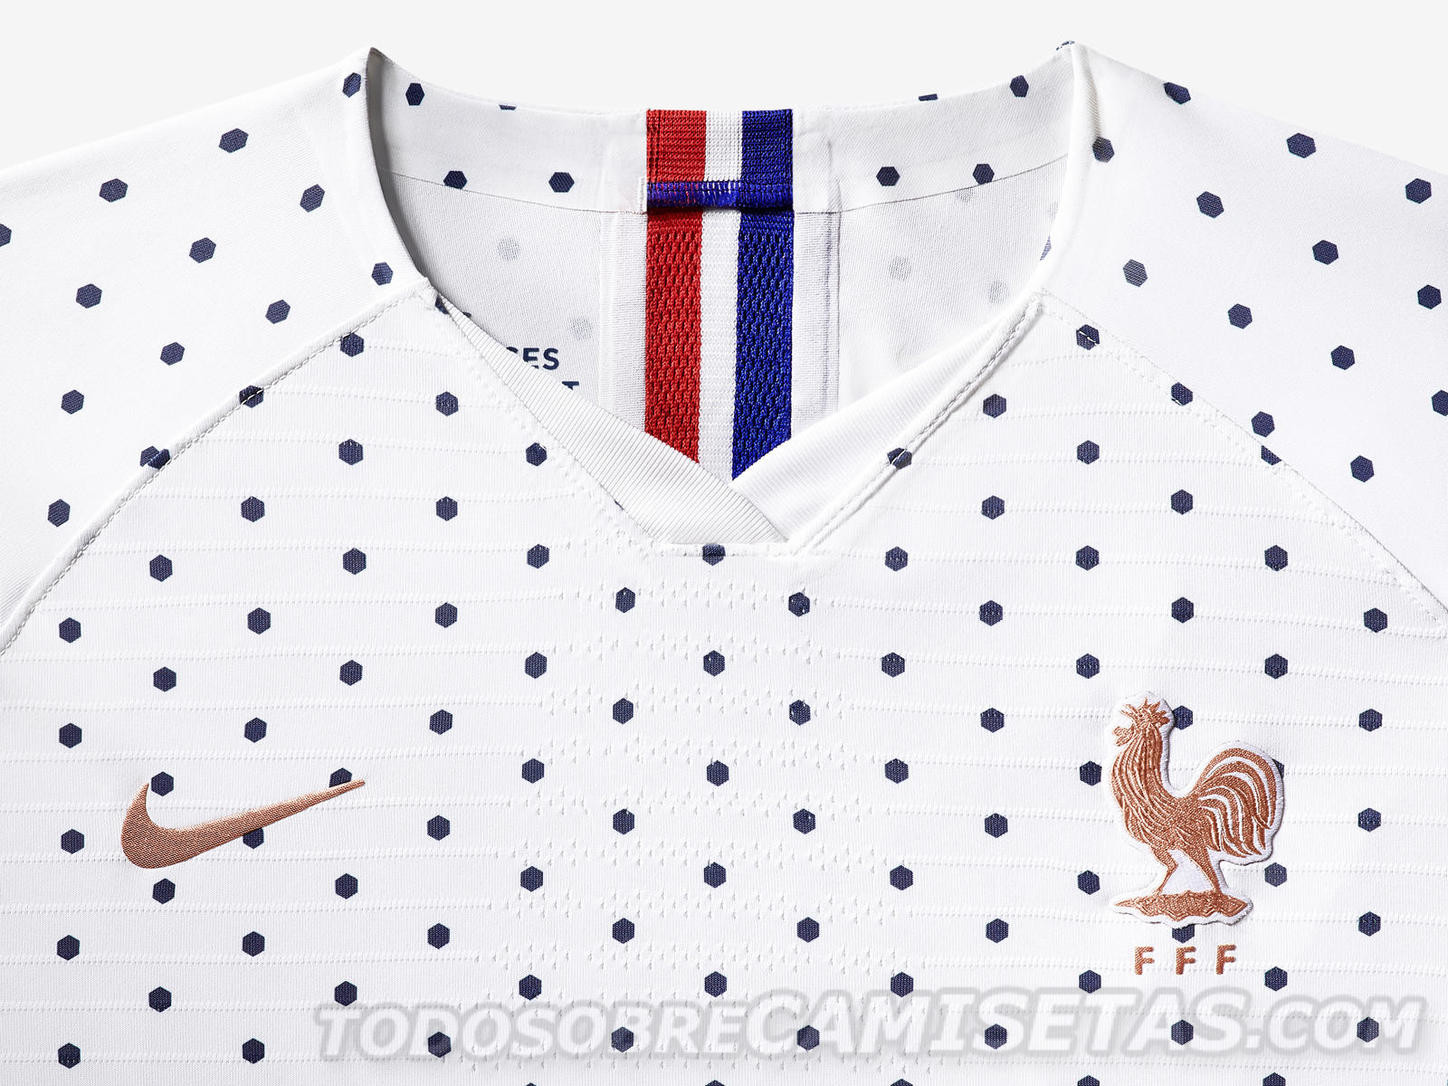 pase a ver Realizable En honor France 2019 Women's World Cup Nike Kits - Todo Sobre Camisetas